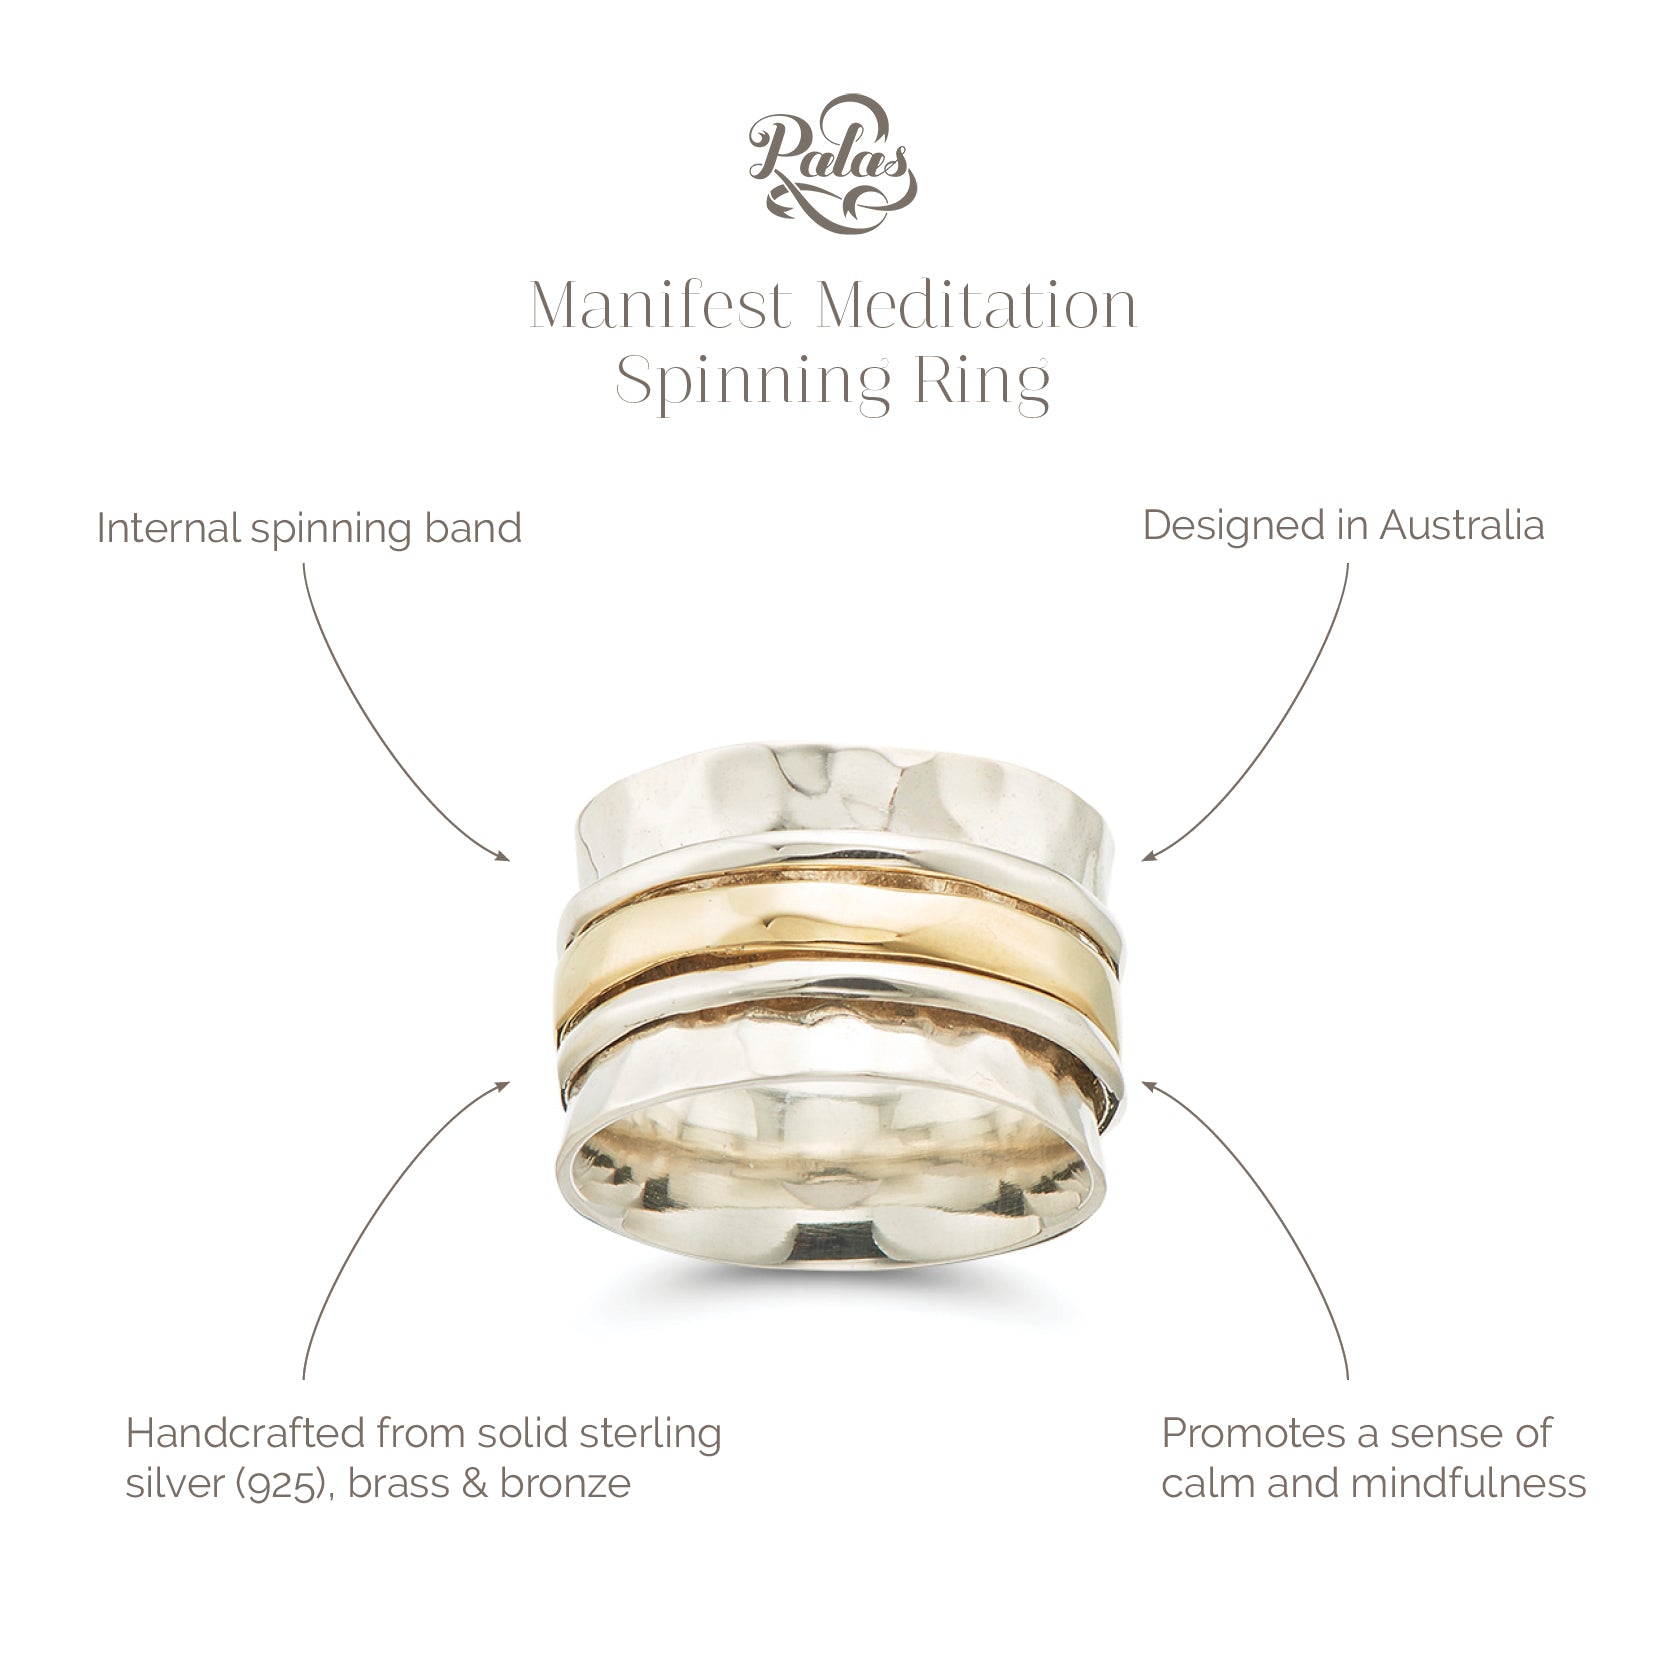 Manifest meditation spinning ring